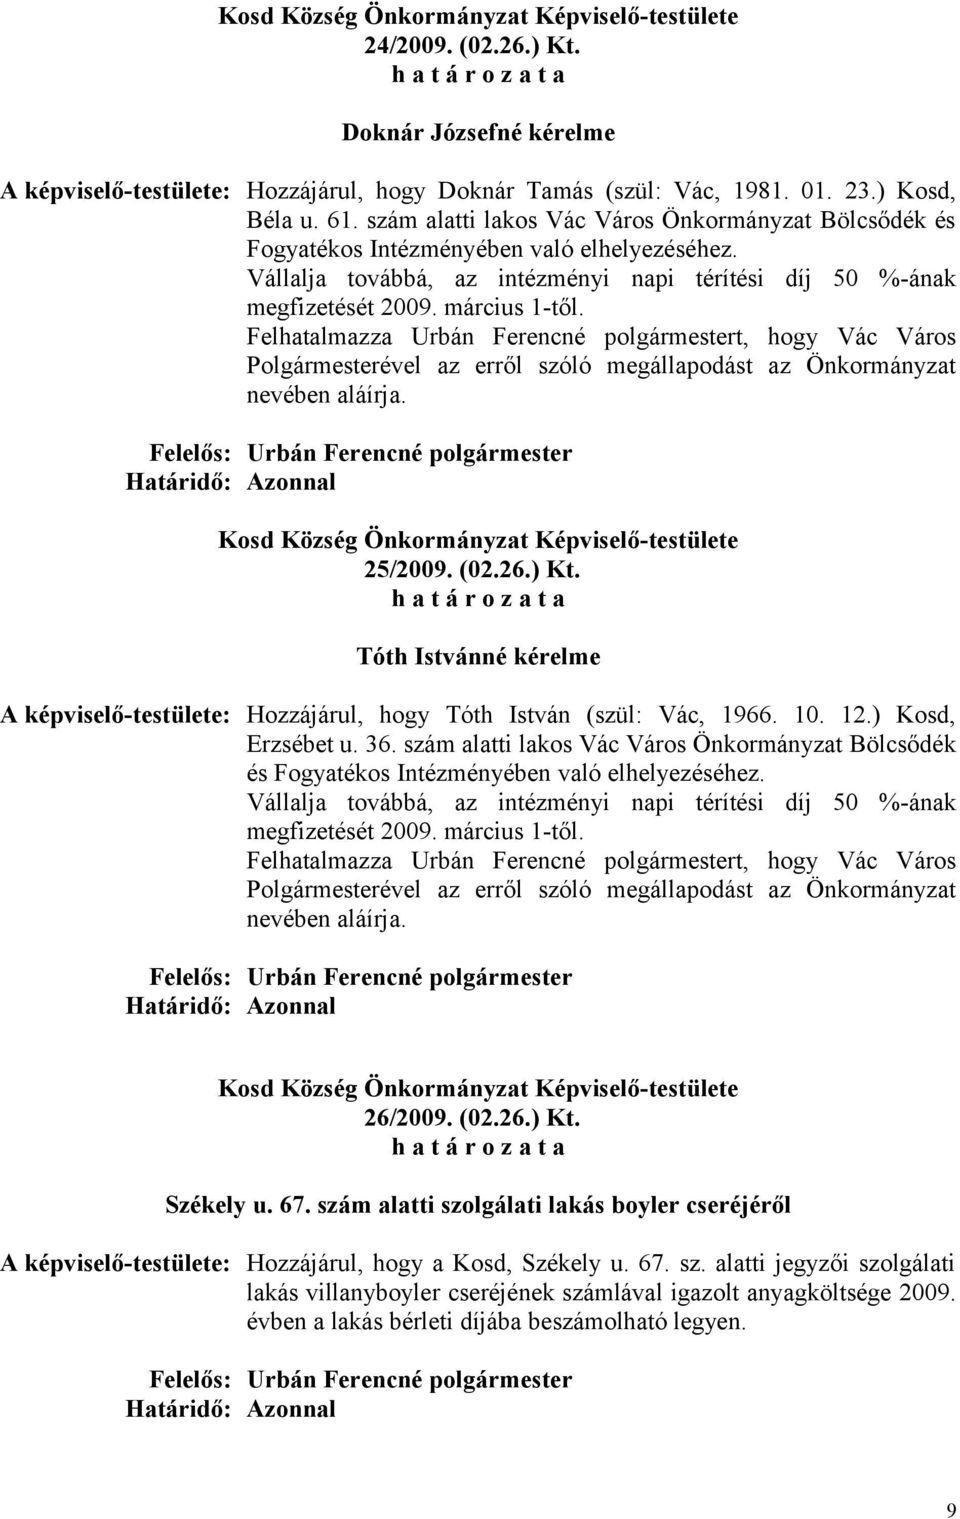 Felhatalmazza Urbán Ferencné polgármestert, hogy Vác Város Polgármesterével az erről szóló megállapodást az Önkormányzat nevében aláírja. 25/2009. (02.26.) Kt.